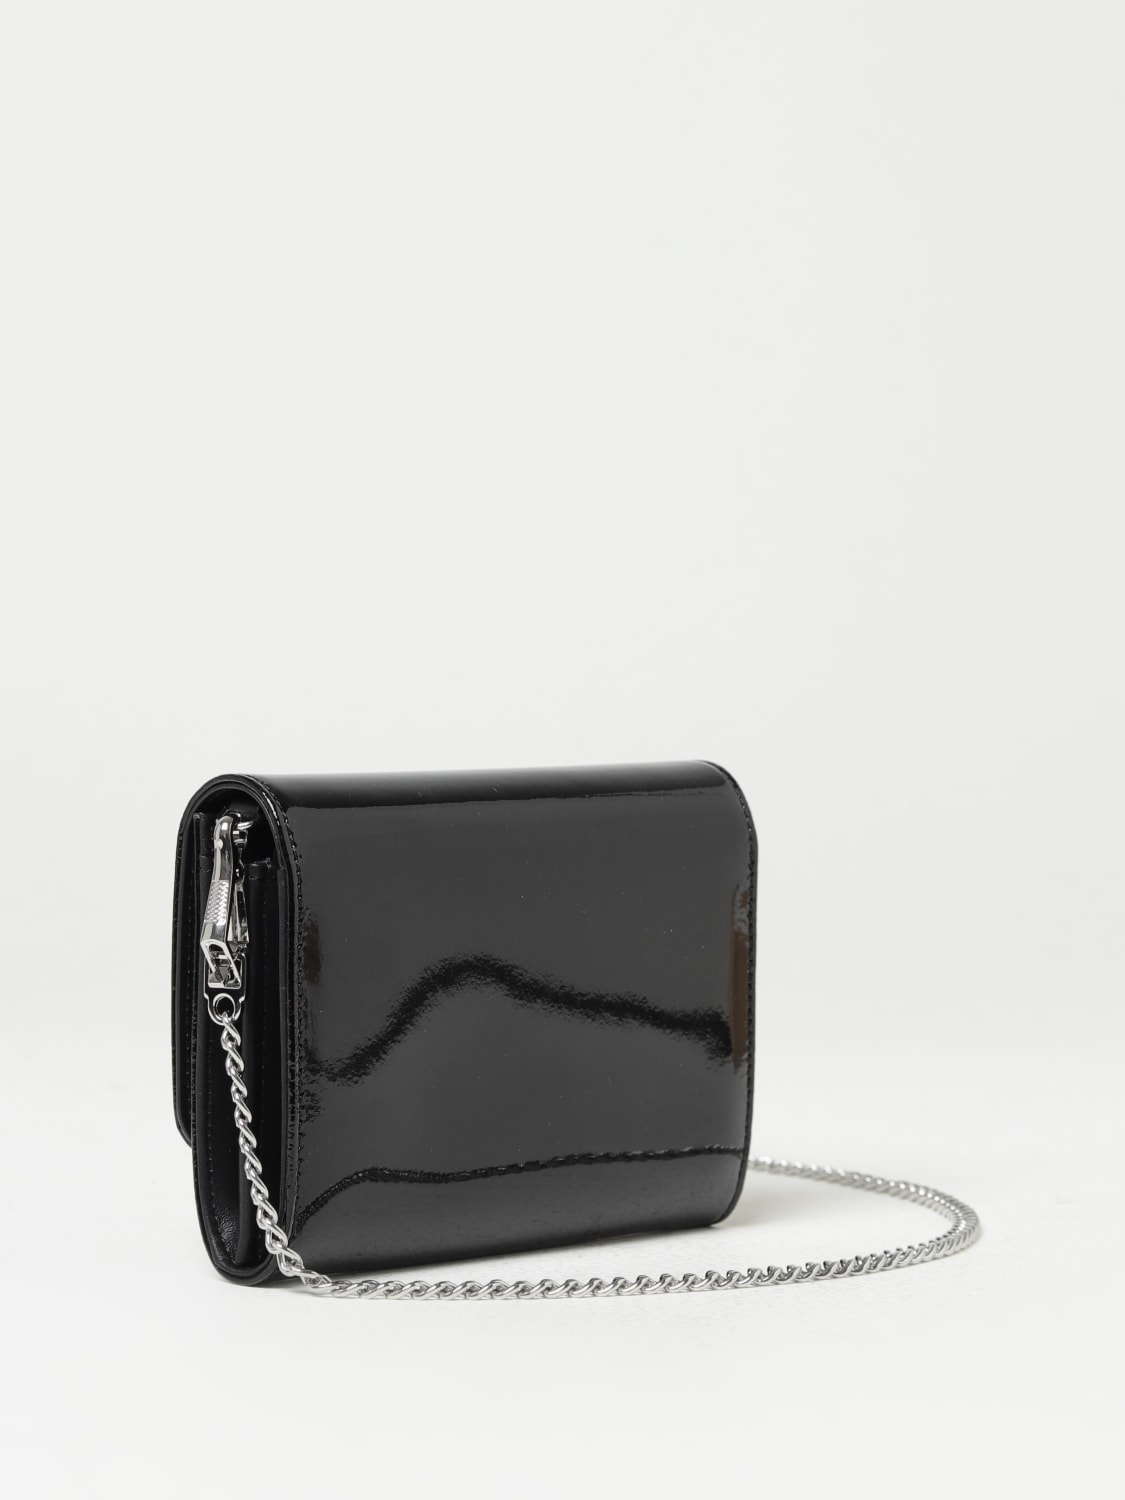 Vivienne Westwood Phone Bag Black